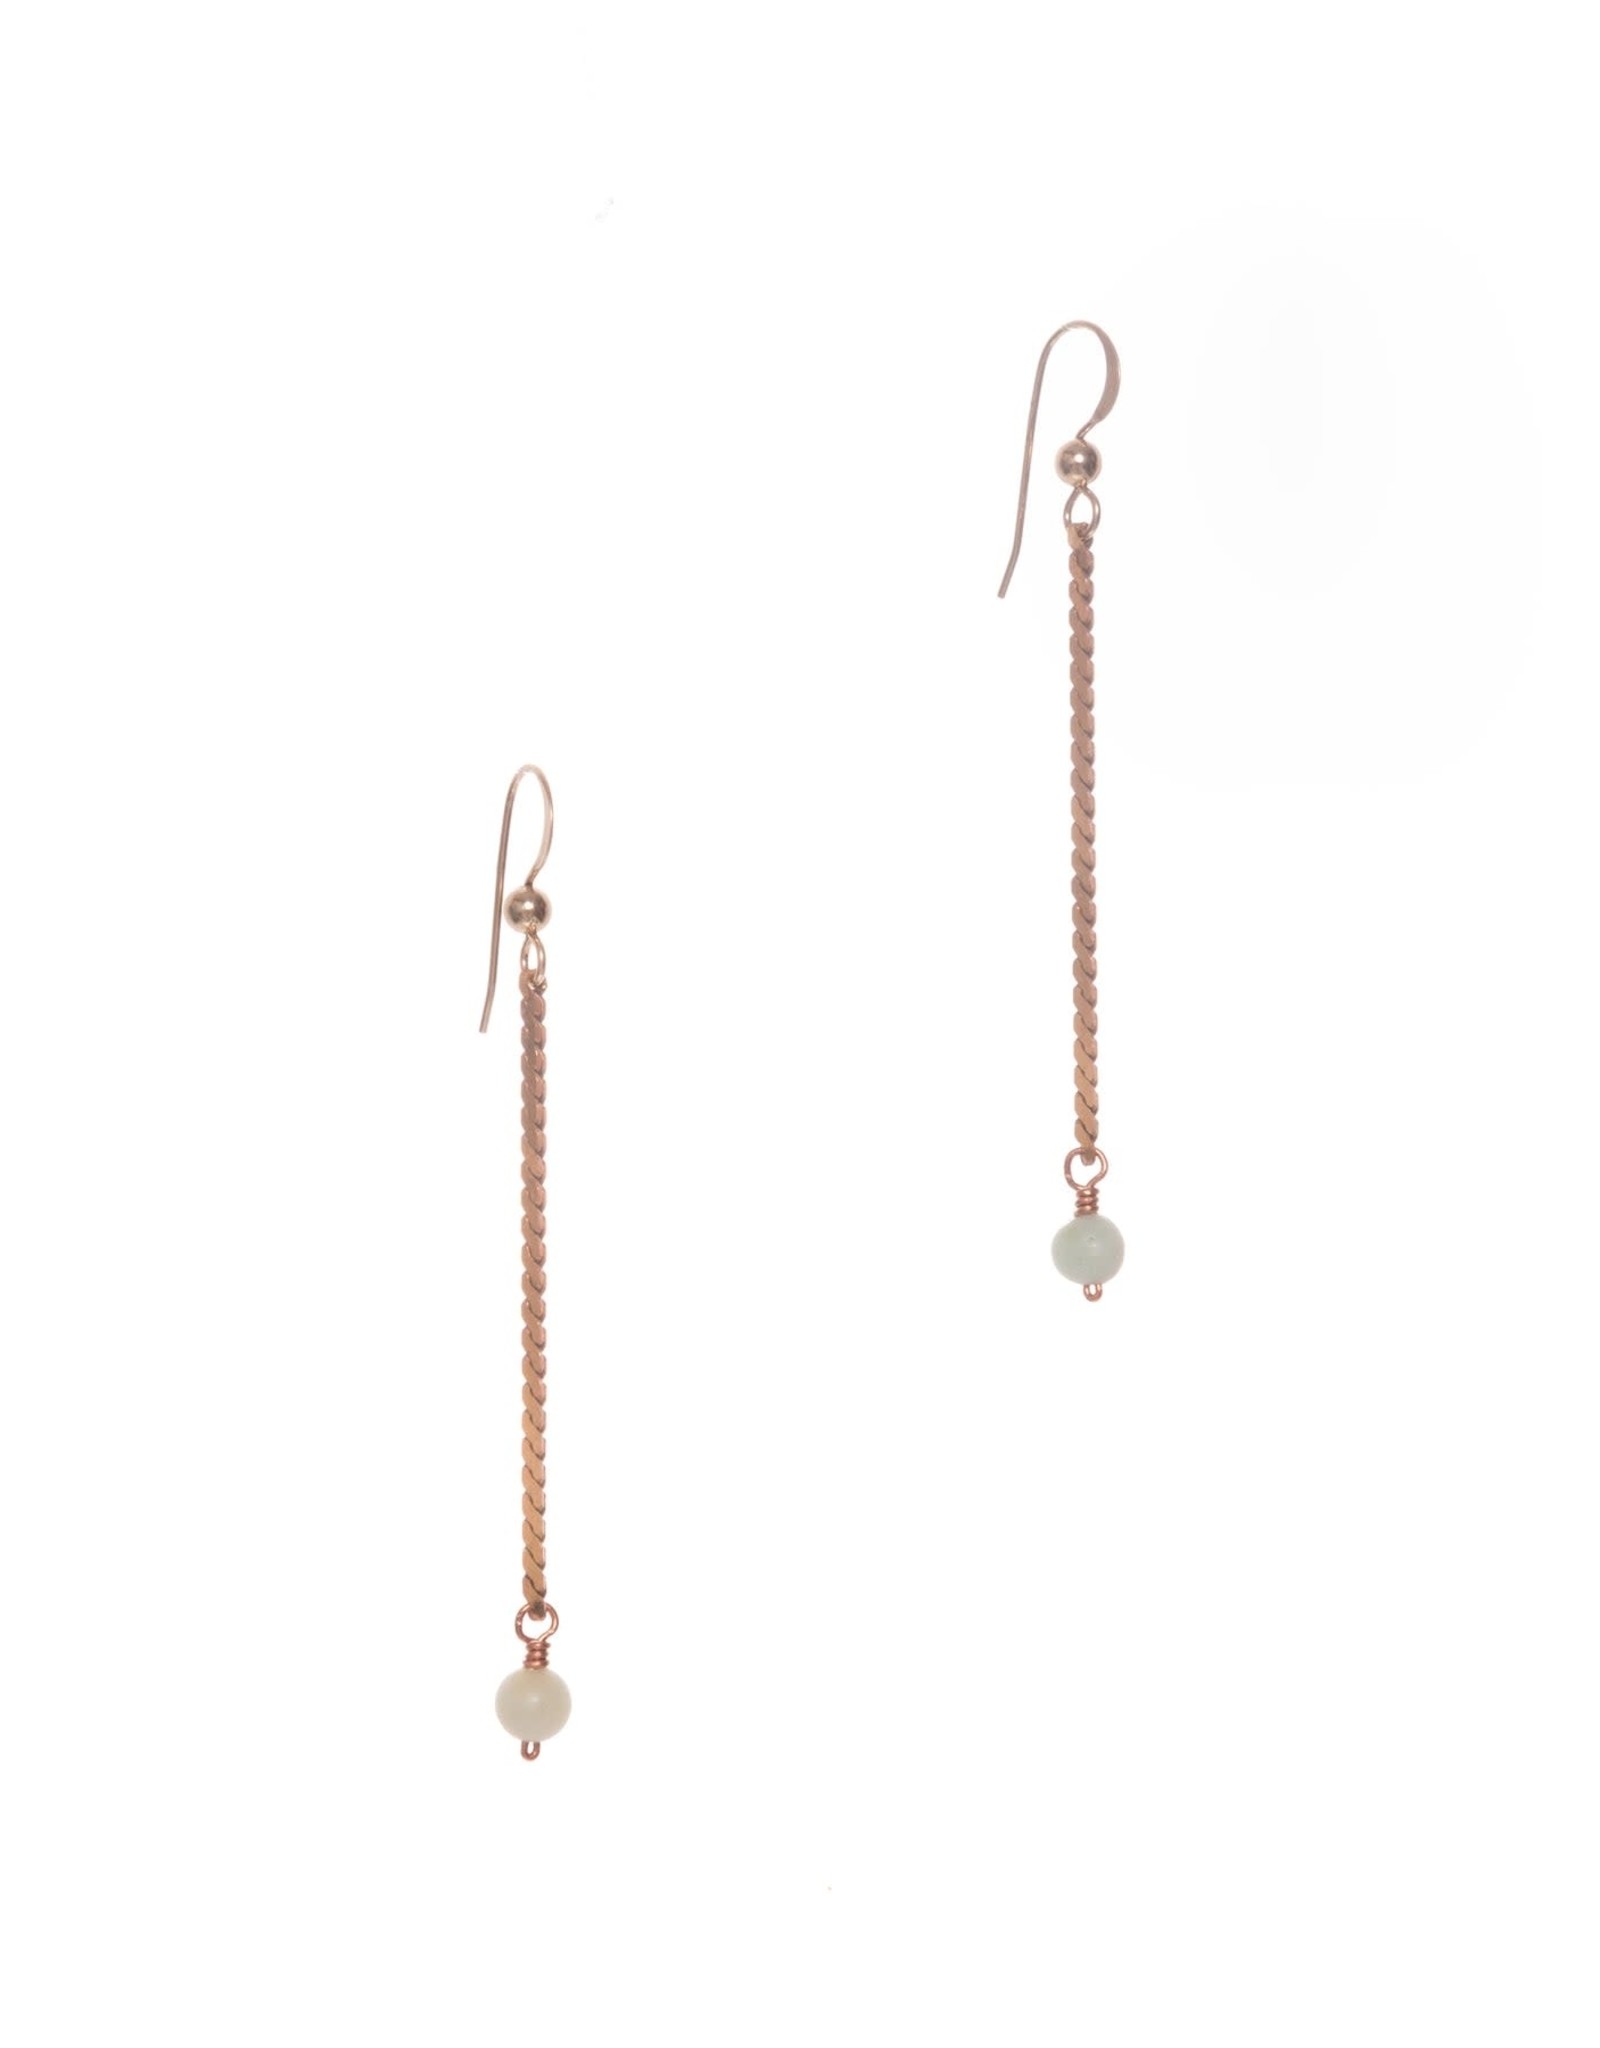 Hailey Gerrits Designs Ondine Earrings - Amazonite